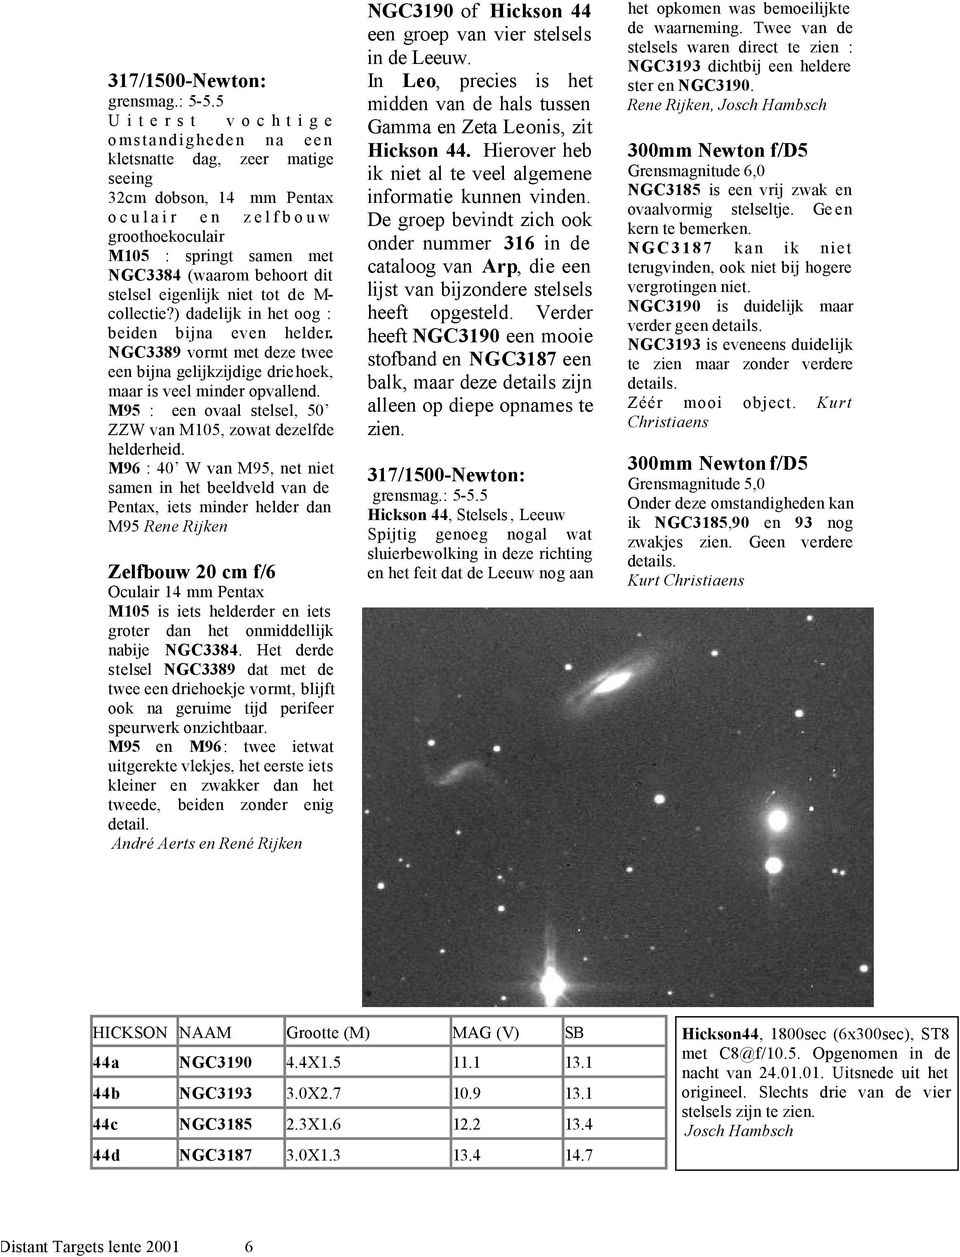 eigenlijk niet tot de M- collectie?) dadelijk in het oog : beiden bijna even helder. NGC3389 vormt met deze twee een bijna gelijkzijdige driehoek, maar is veel minder opvallend.